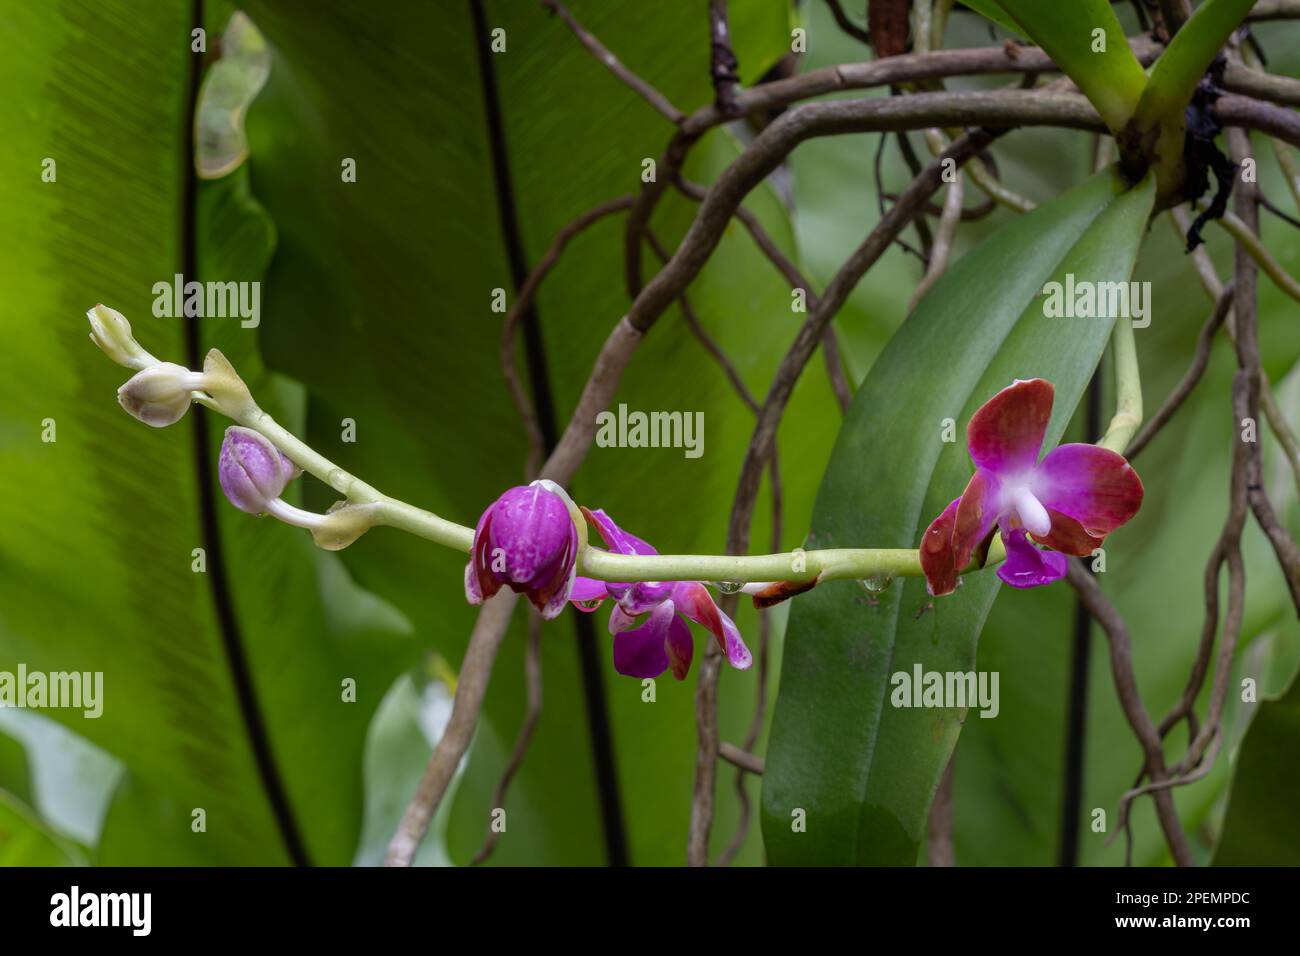 Gros plan sur les espèces tropicales épiphytiques d'orchidées hygrochilus parishii var numottiana qui fleurit à l'extérieur avec des fleurs violettes, blanches et brunes Banque D'Images